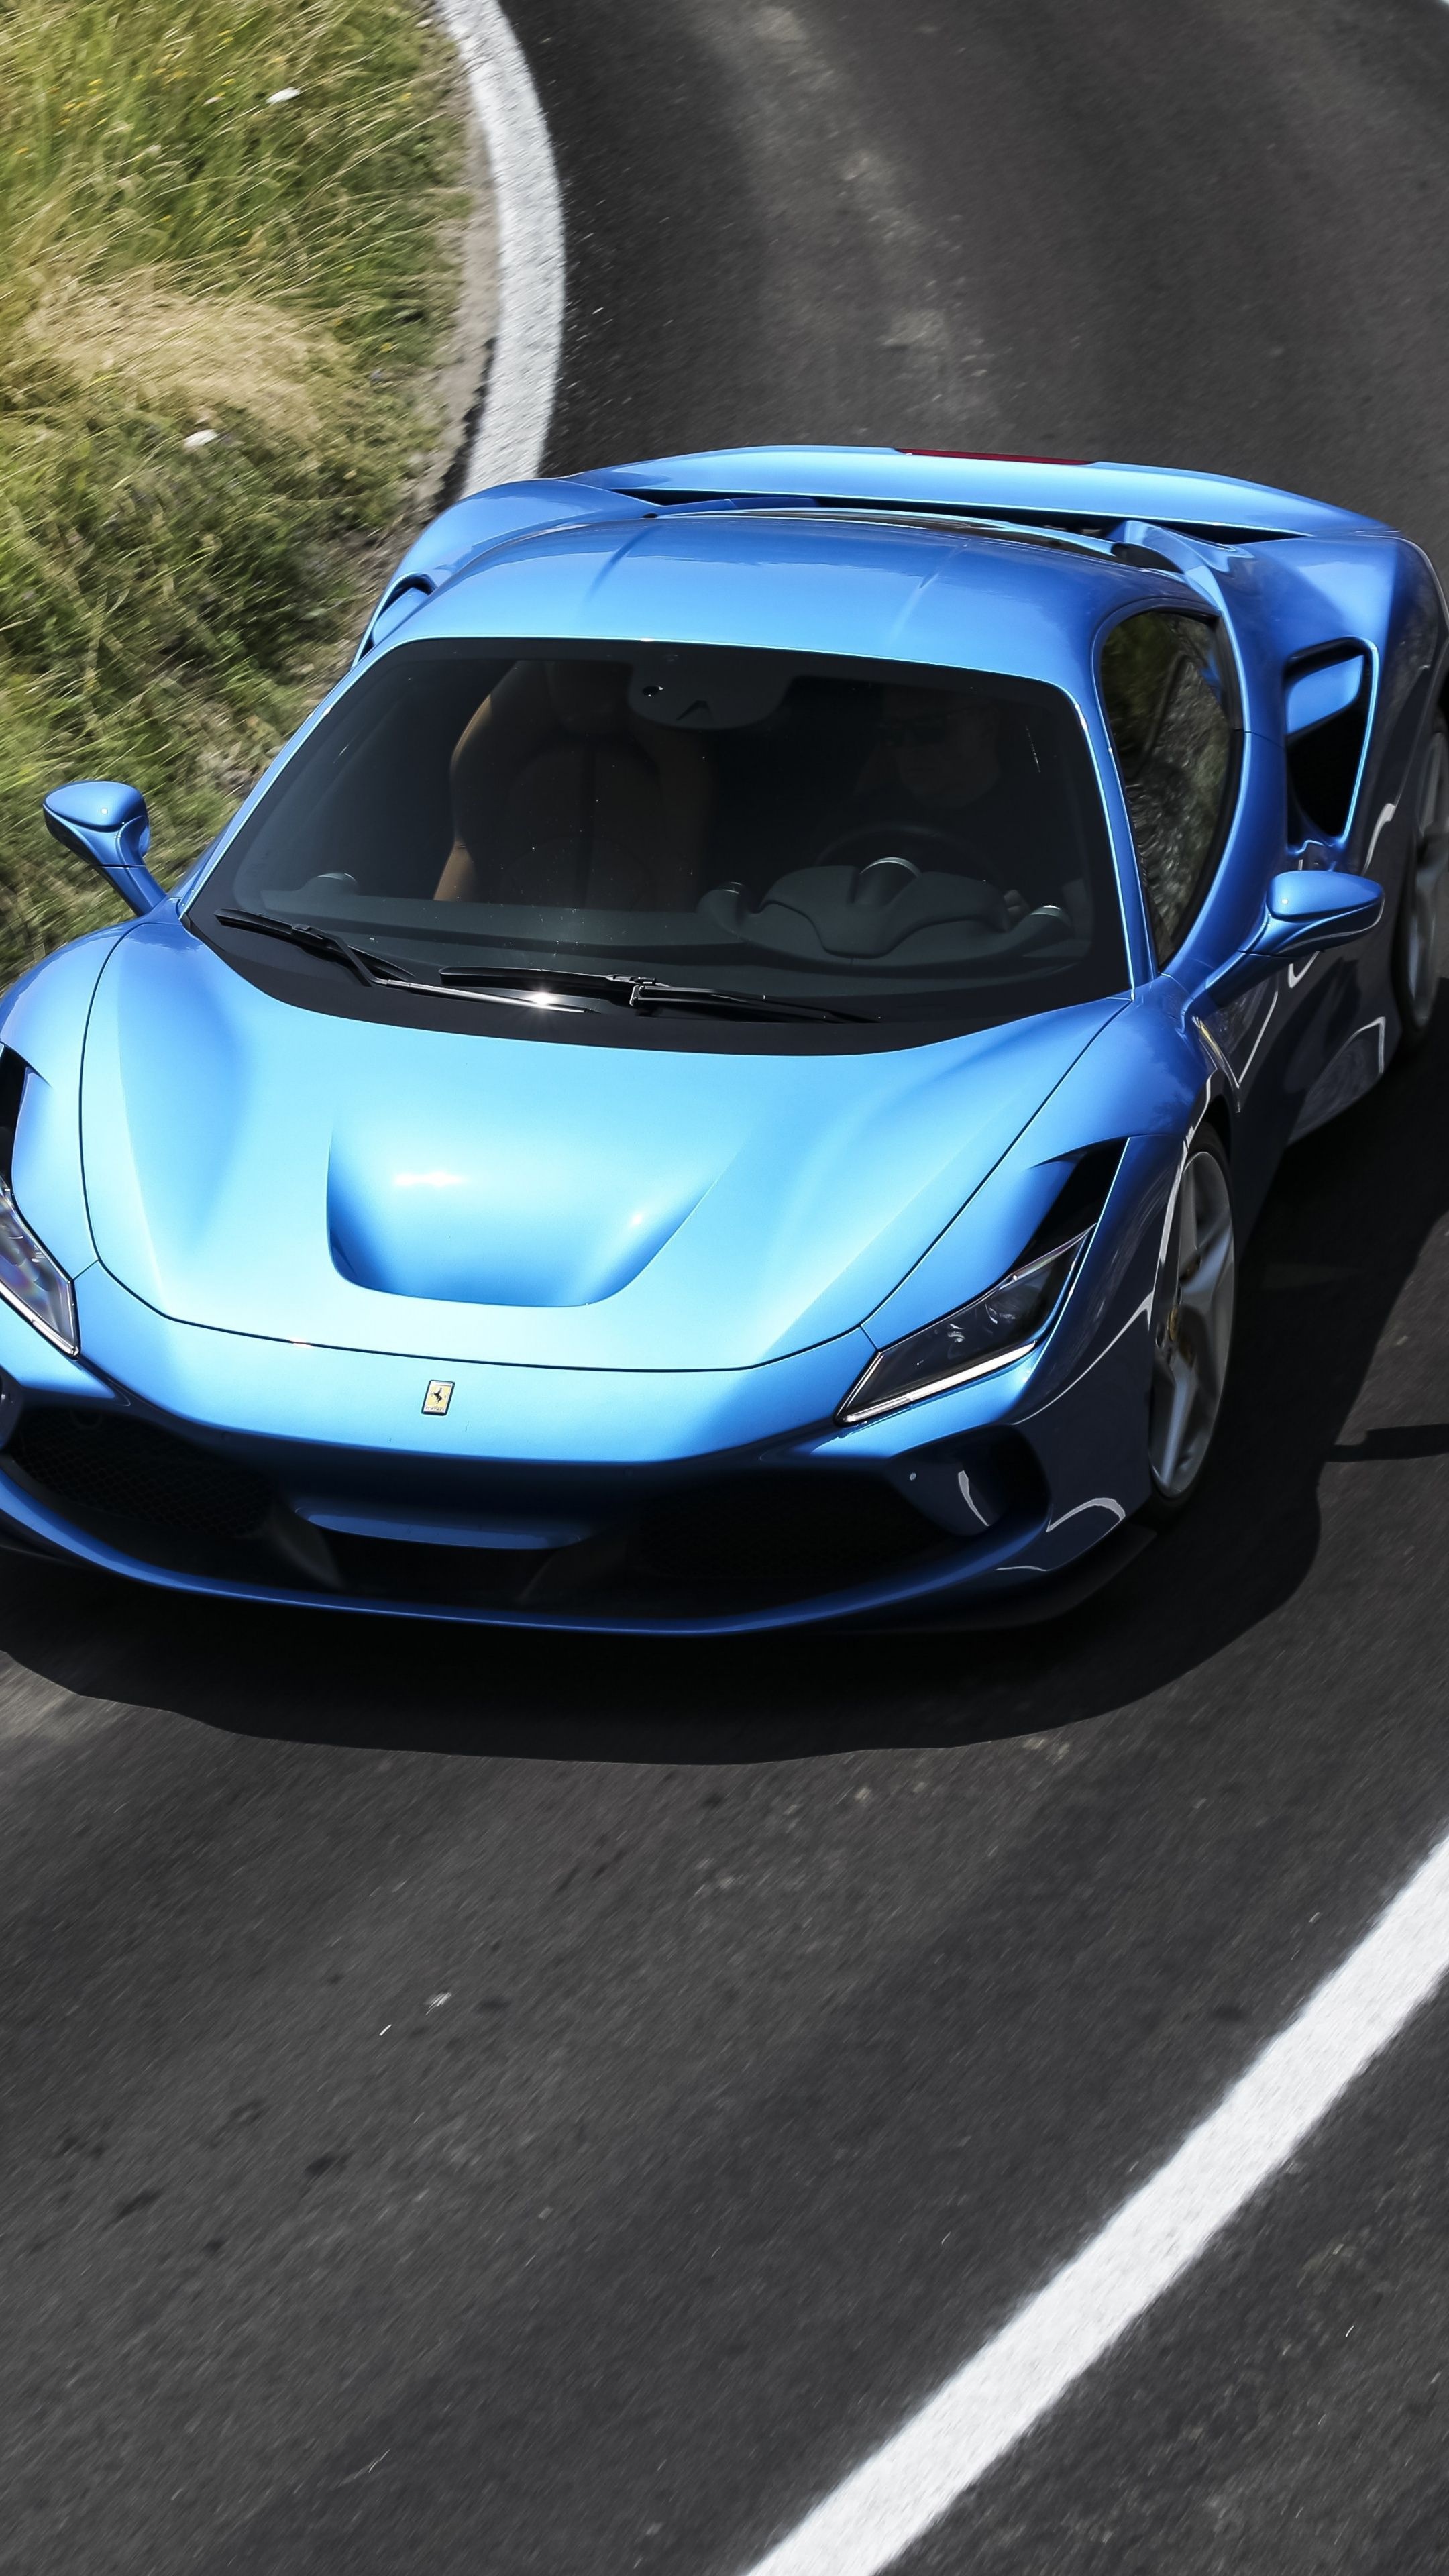 Ferrari F8, Blue sports car, On-road beauty, Stunning wallpaper, 2160x3840 4K Phone